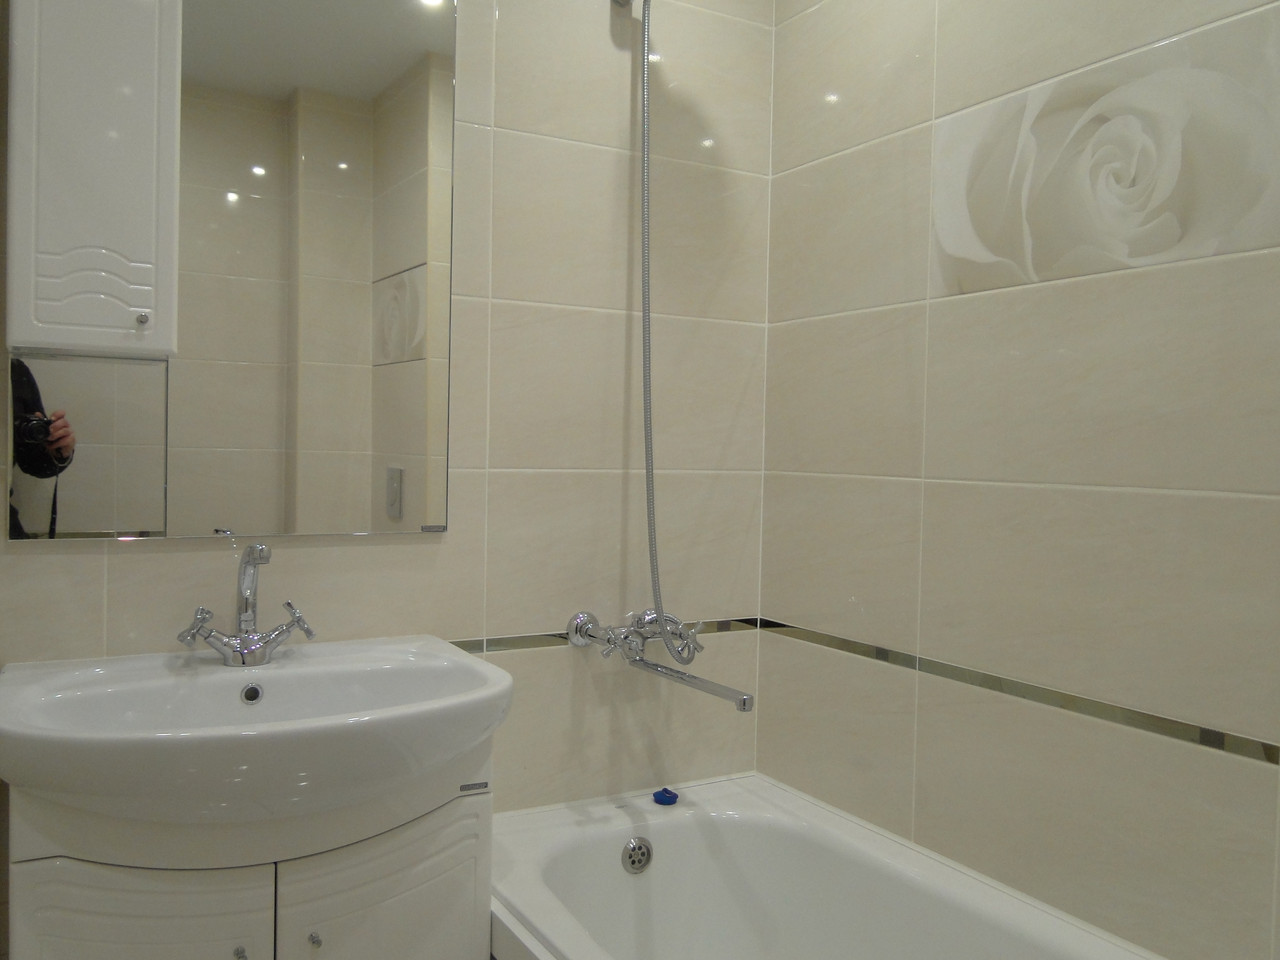 Сравниваем оформление ванной комнаты в России и других странах мира